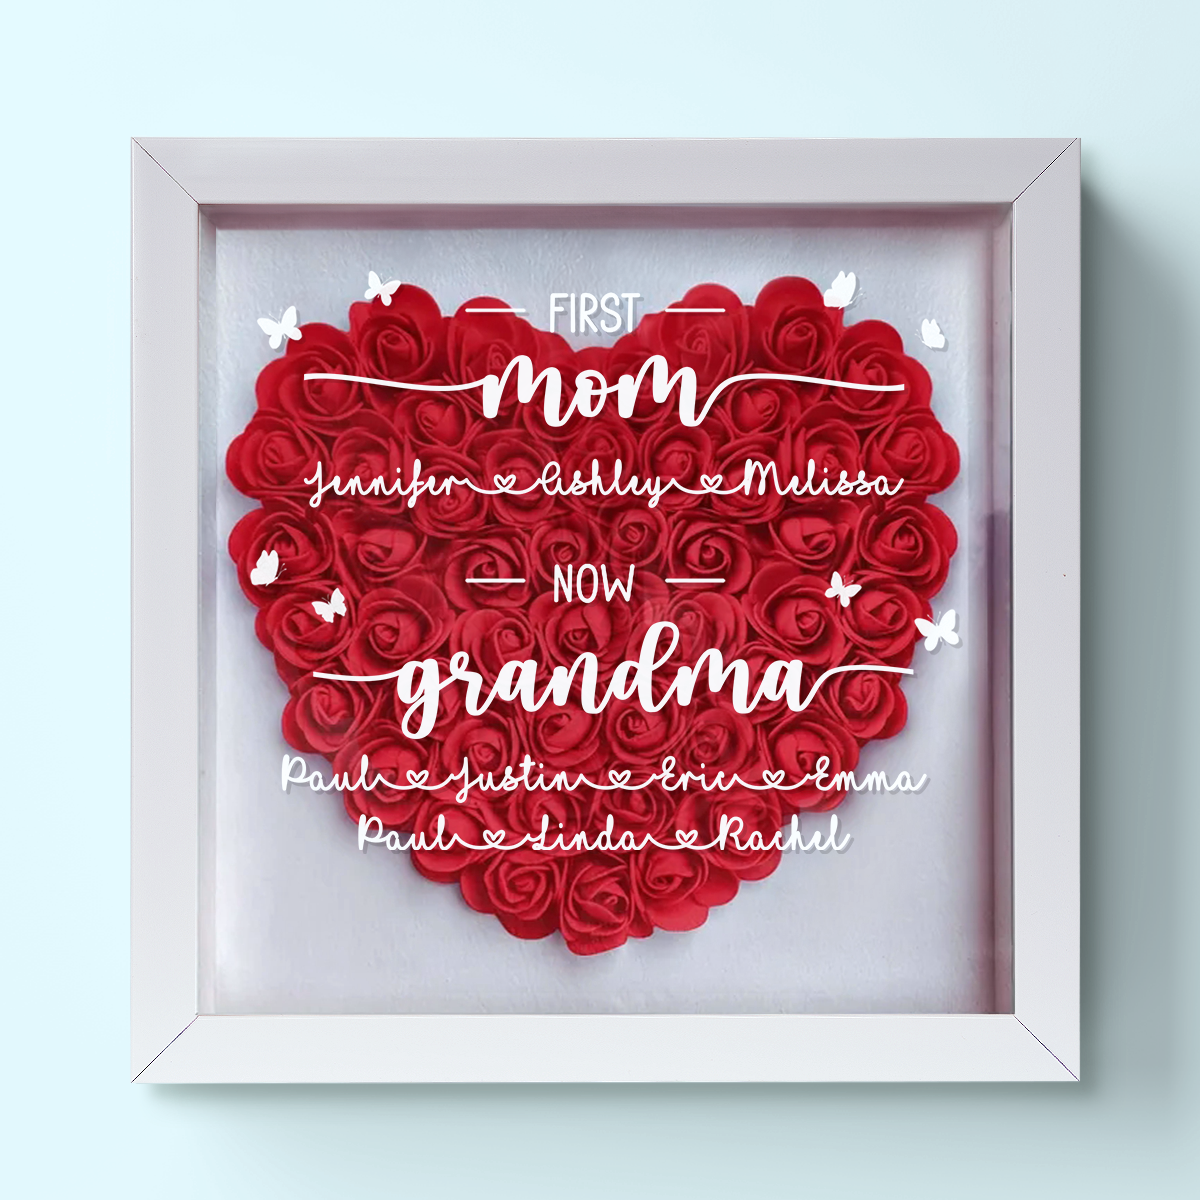 First Mom Now Grandma - Personalized Flower Shadow Box Gift For Grandmas